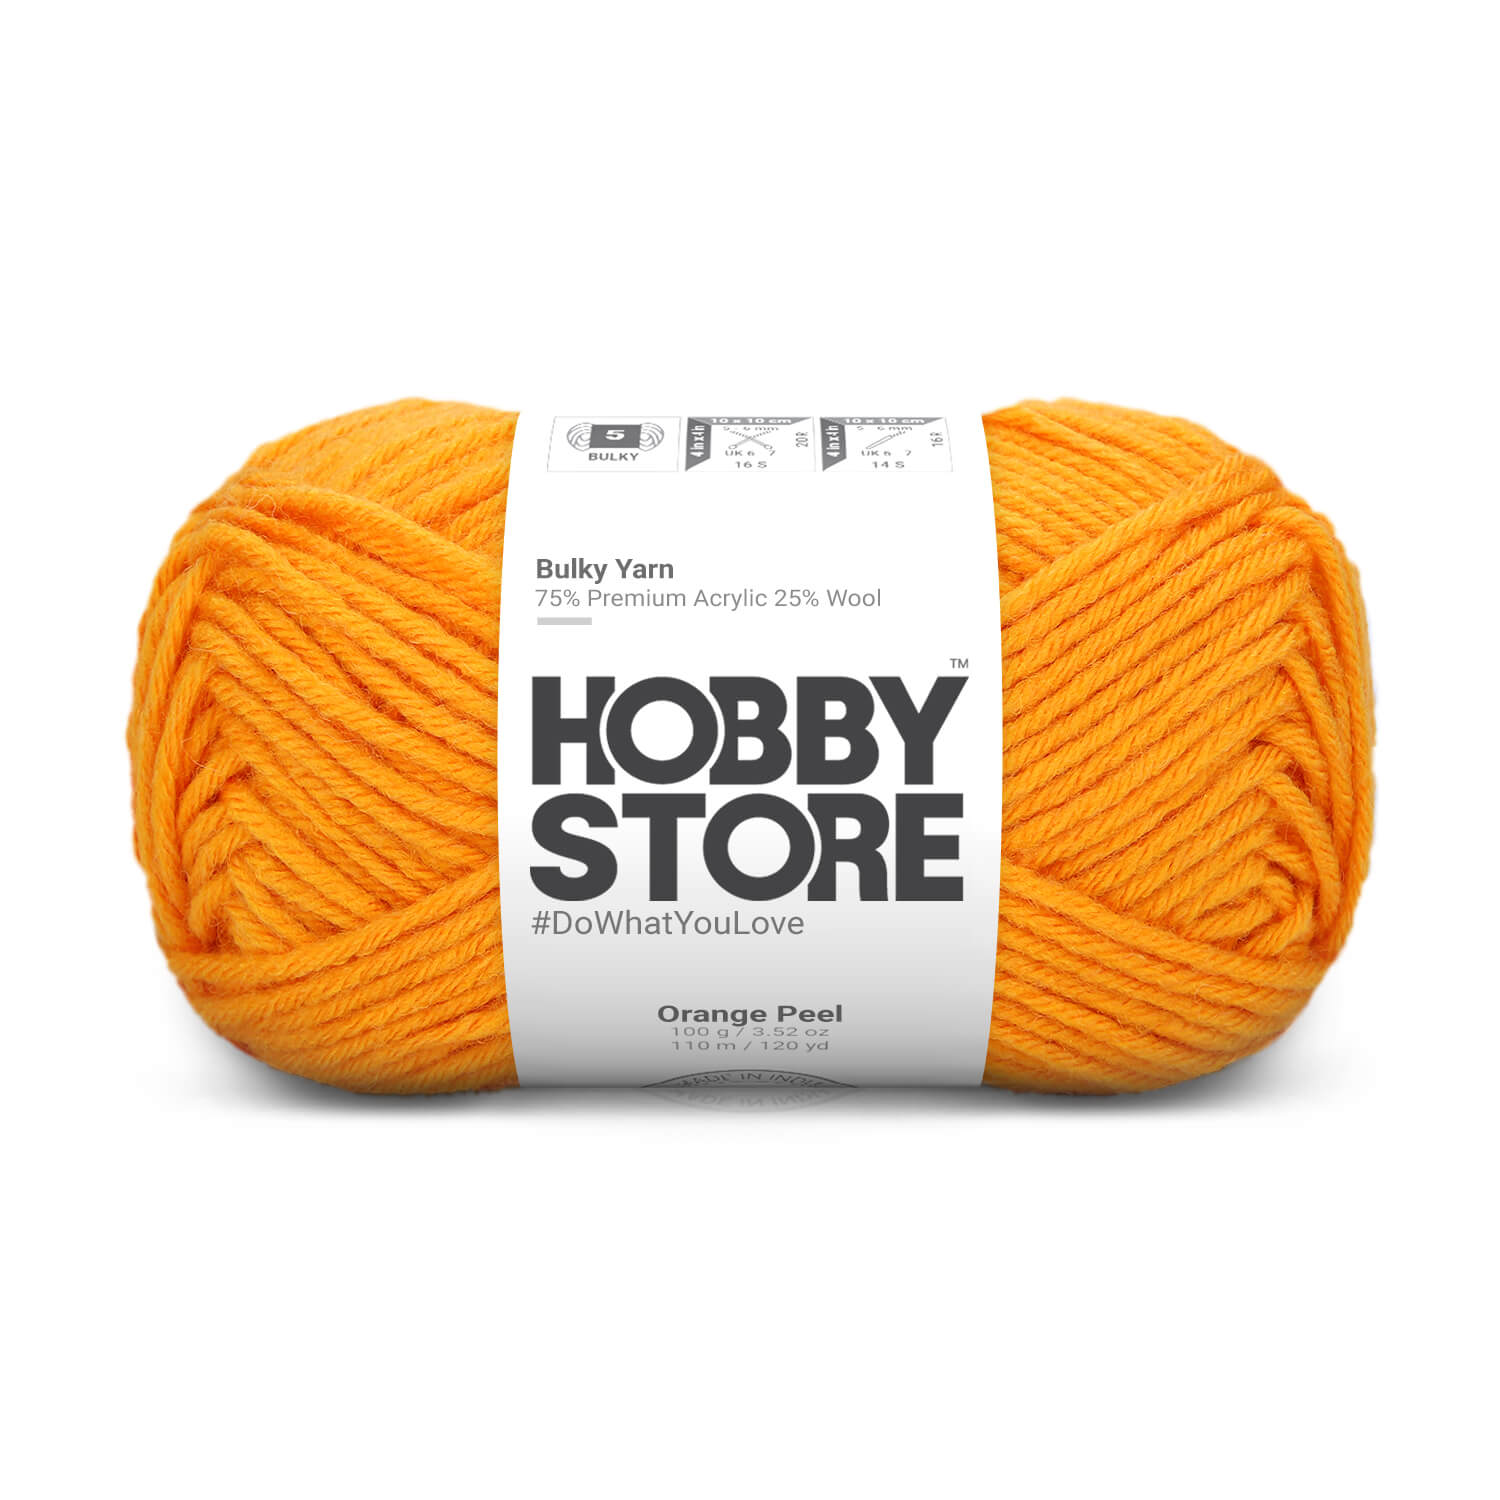 Bulky Yarn by Hobby Store - Orange Peel 6037